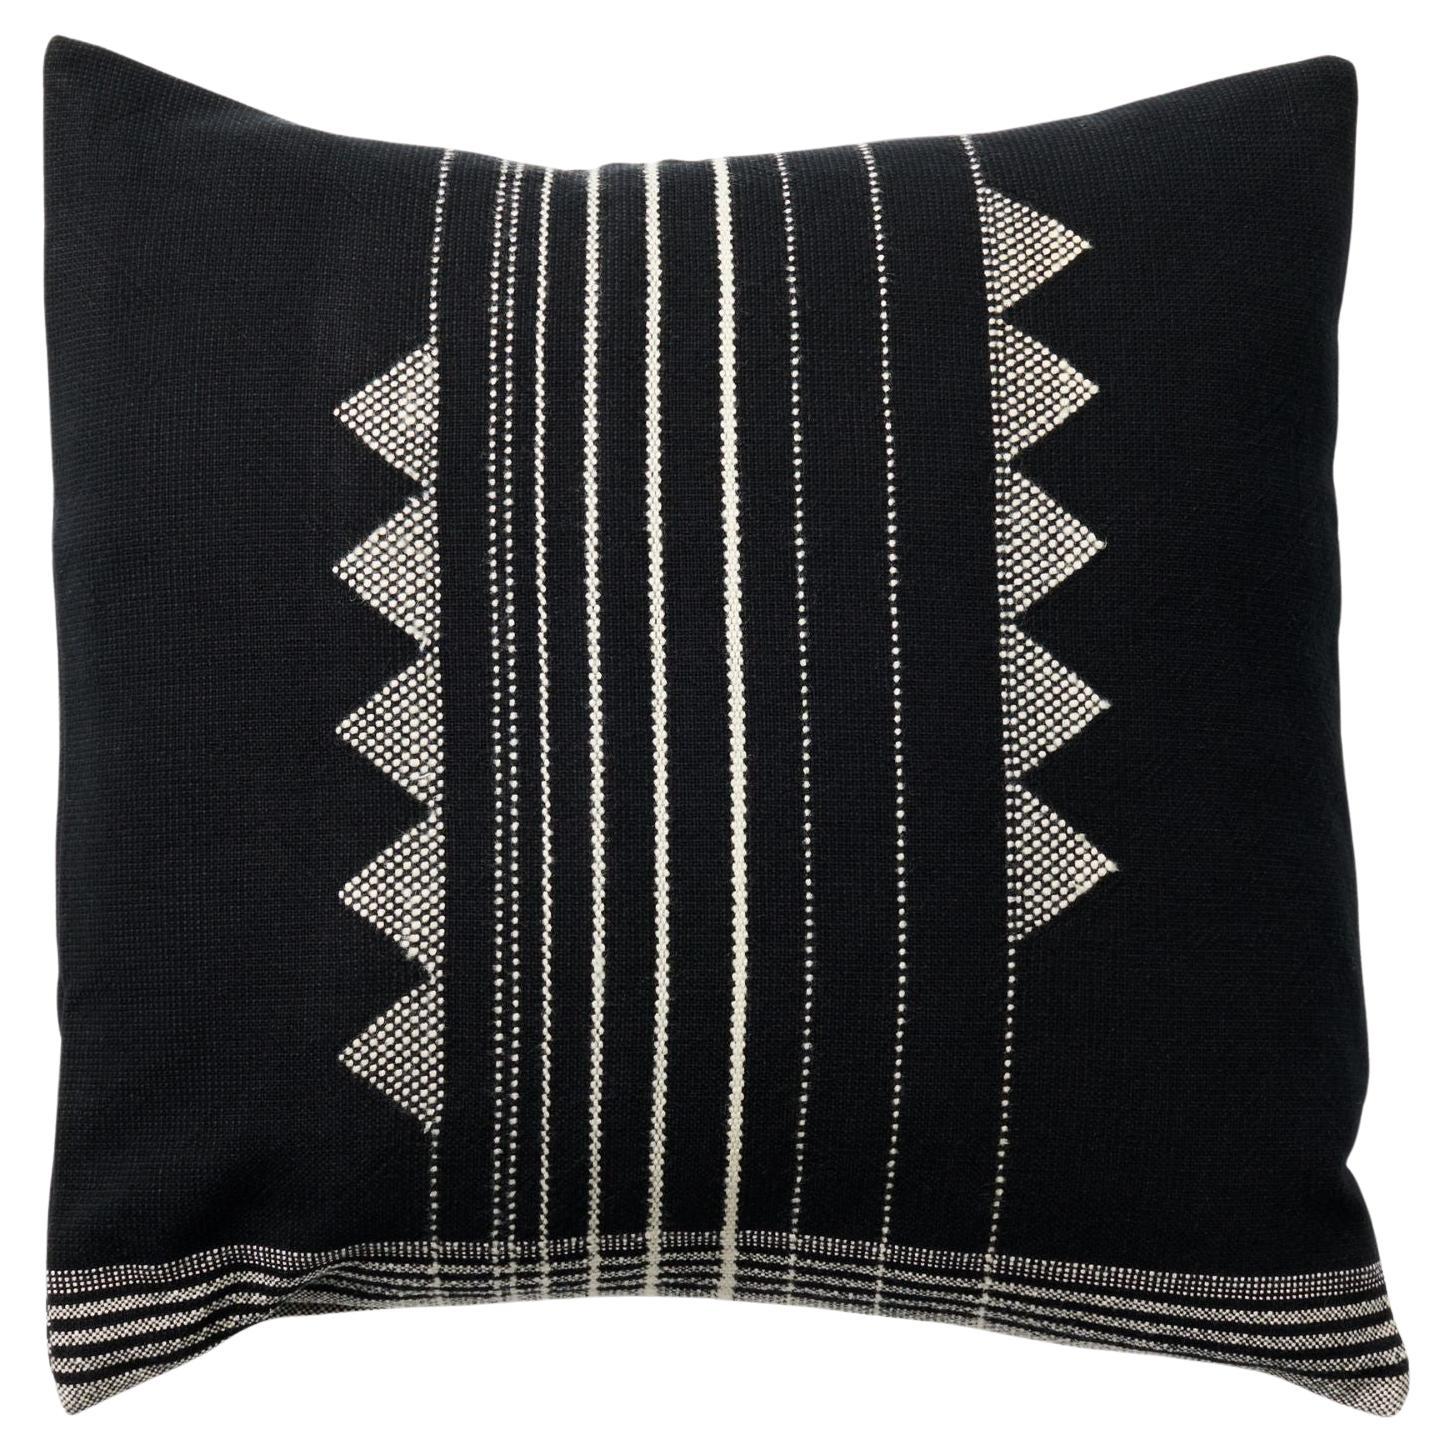 Kora - Grand coussin noir en laine de soie mélangée à coton, tissé à la main, noir et blanc